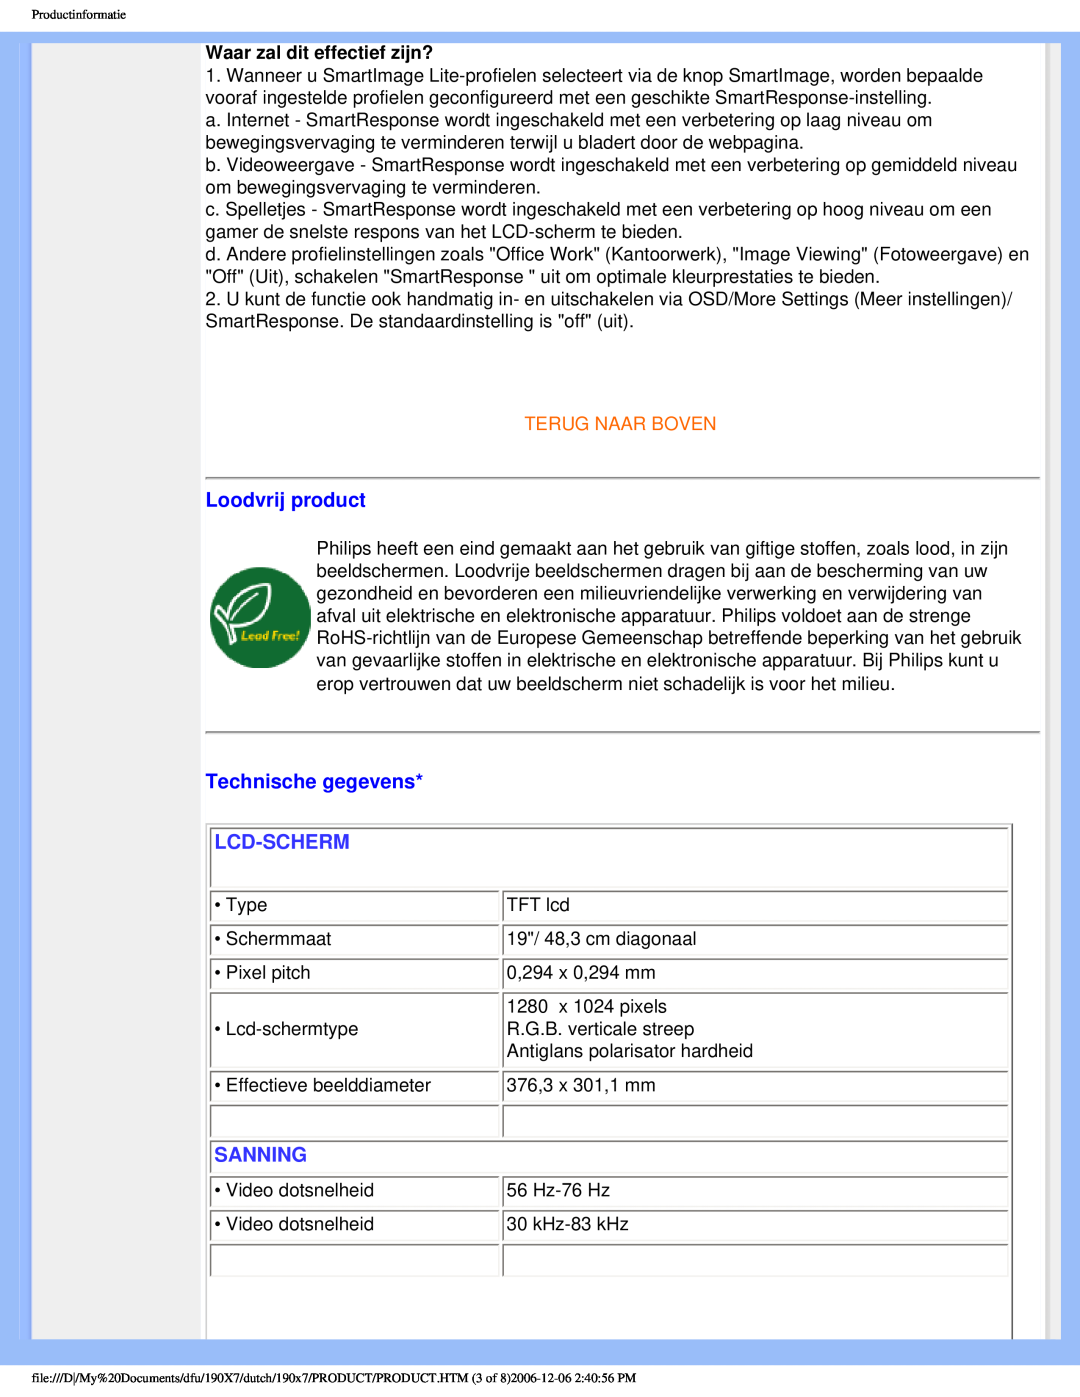 Philips 190X7 user manual Loodvrij product, Technische gegevens, Lcd-Scherm, Sanning, Terug Naar Boven 